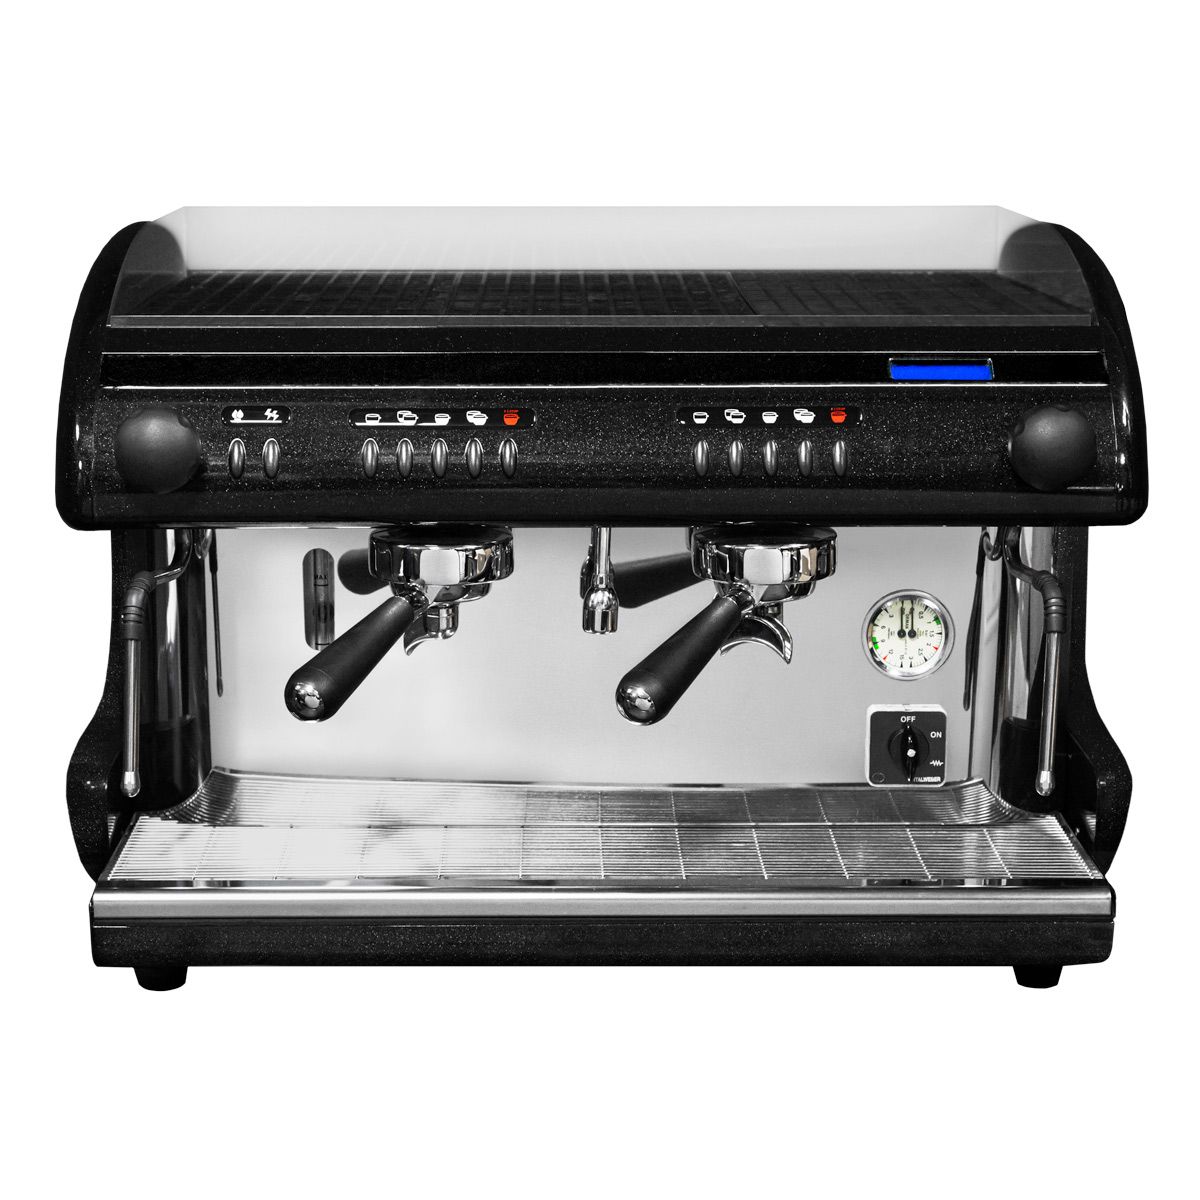 Máquina de café expreso y capuccino automática de 2 grupos negra